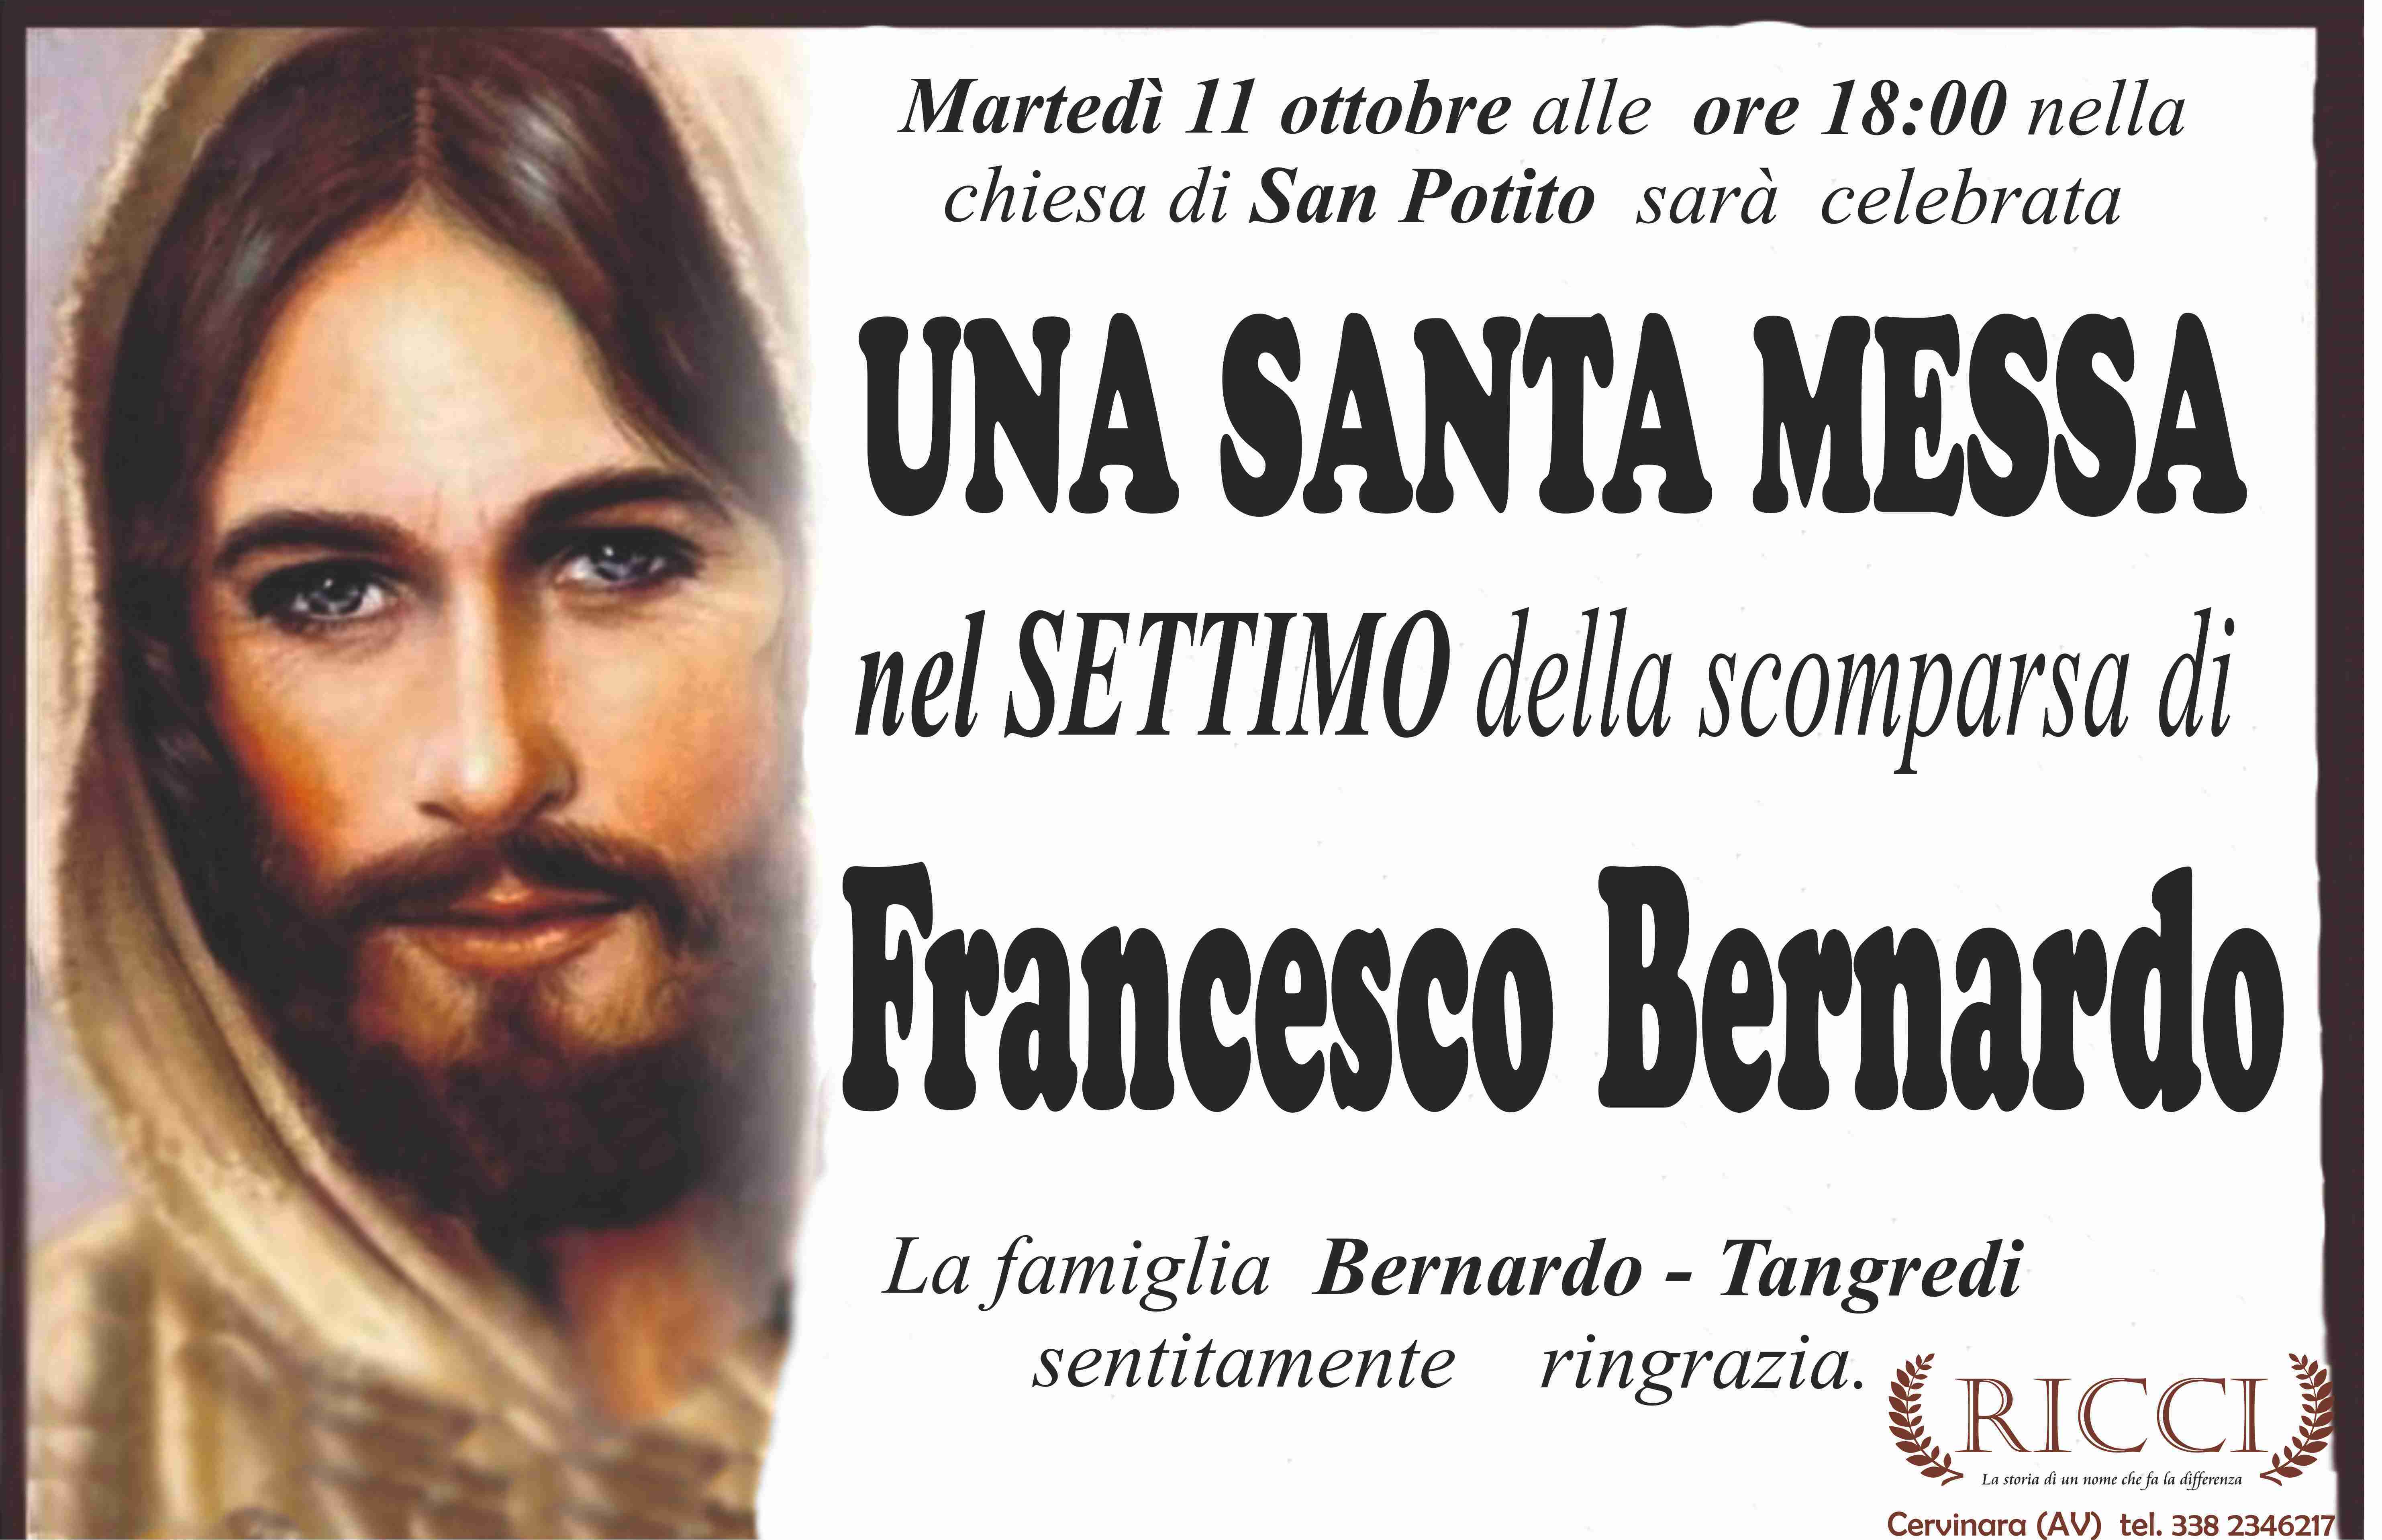 Francesco Bernardo